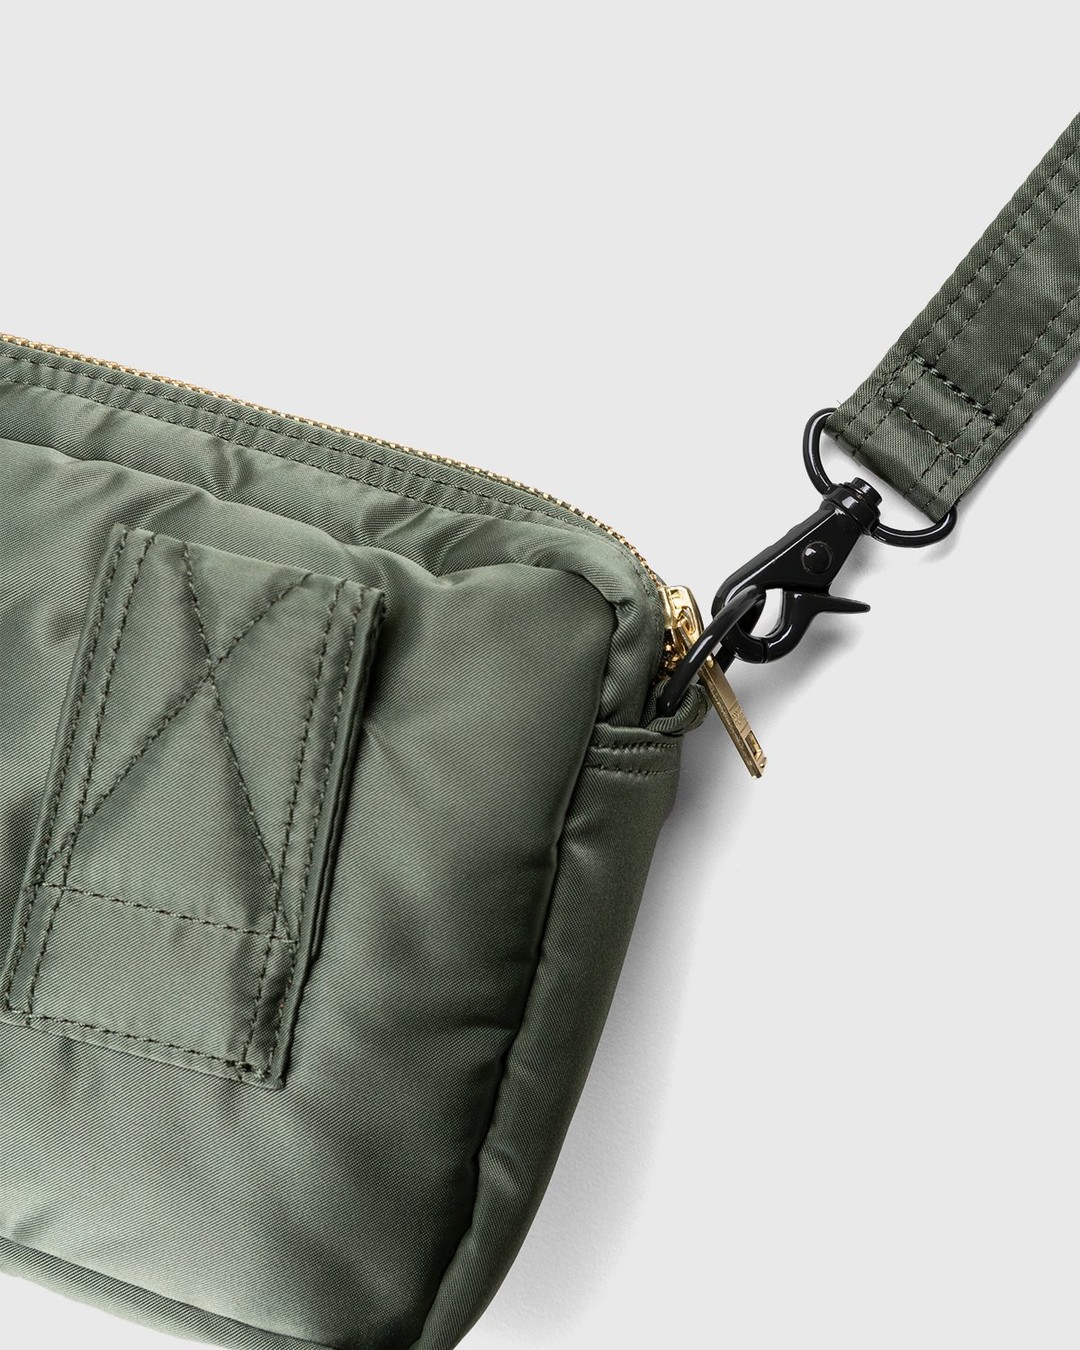 Porter-Yoshida & Co. – Tanker Shoulder Bag Sage Green - Bags - Green - Image 4